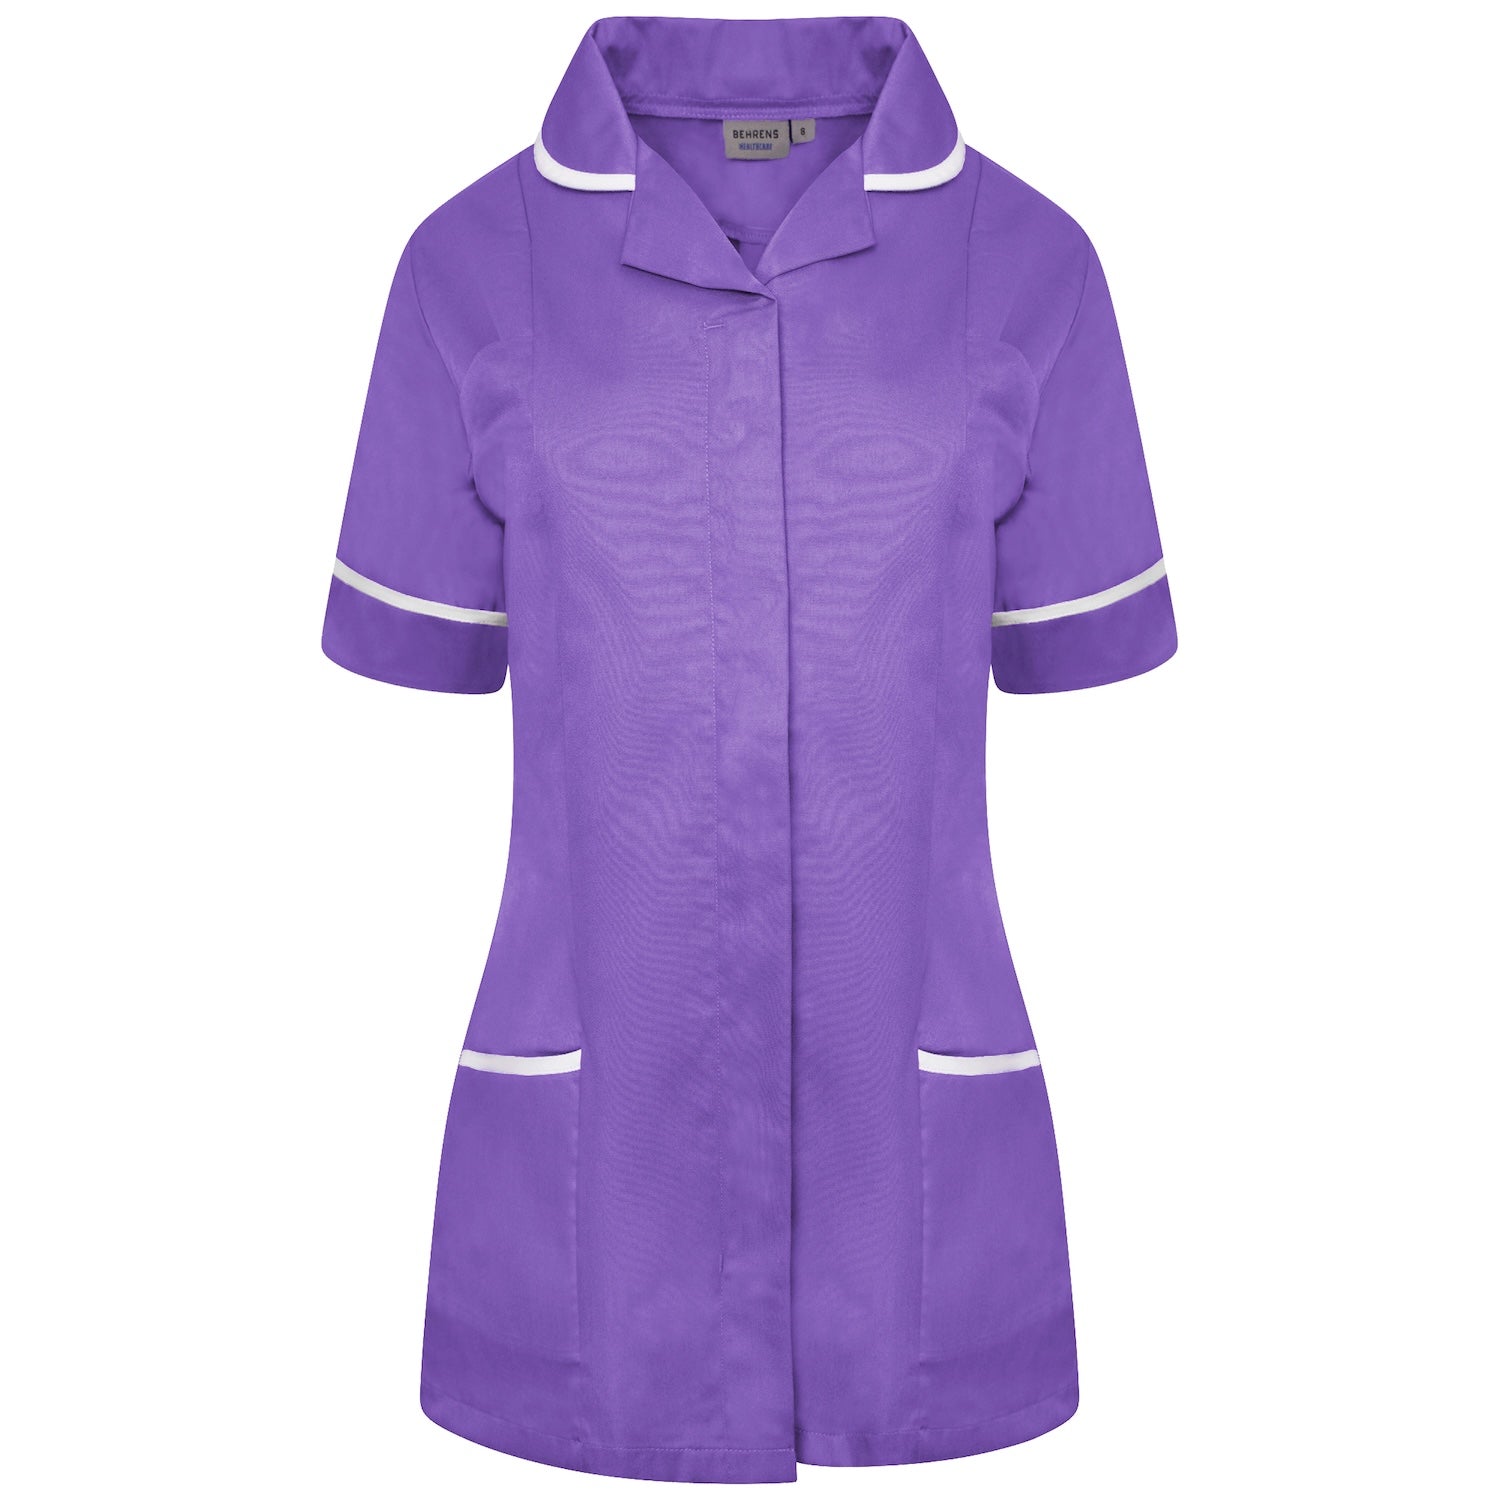 Ladies Healthcare Tunic | Round Collar | Purple/White Trim